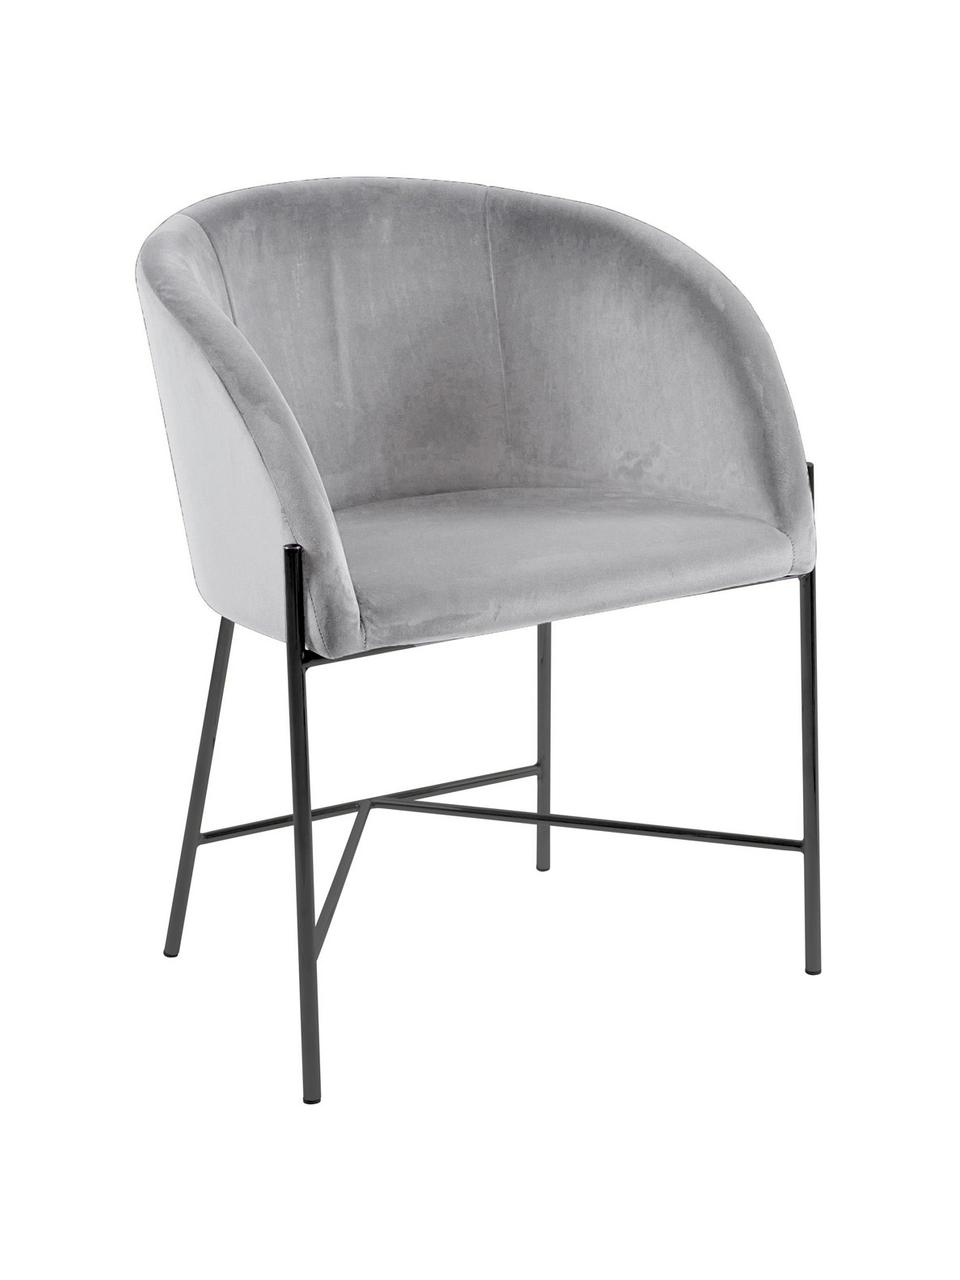 Krzesło tapicerowane z aksamitu Nelson, Tapicerka: aksamit poliestrowy Dzięk, Nogi: metal lakierowany, Szary, czarny, S 56 x G 55 cm